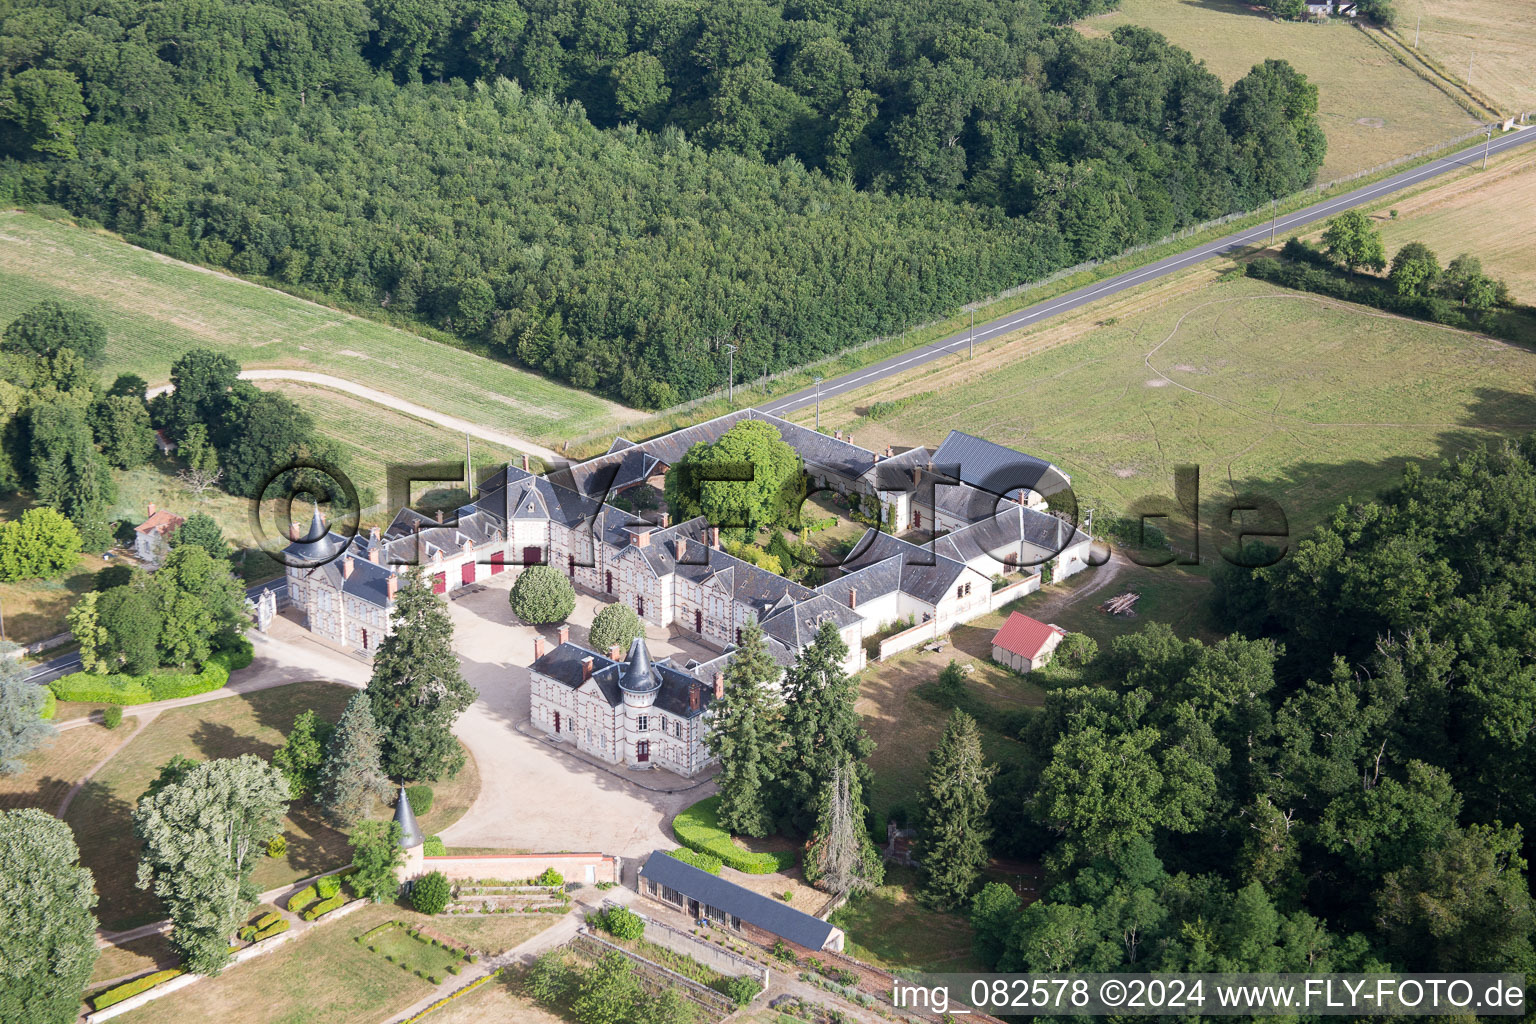 Château de Combreux im Bundesland Loiret, Frankreich aus der Luft